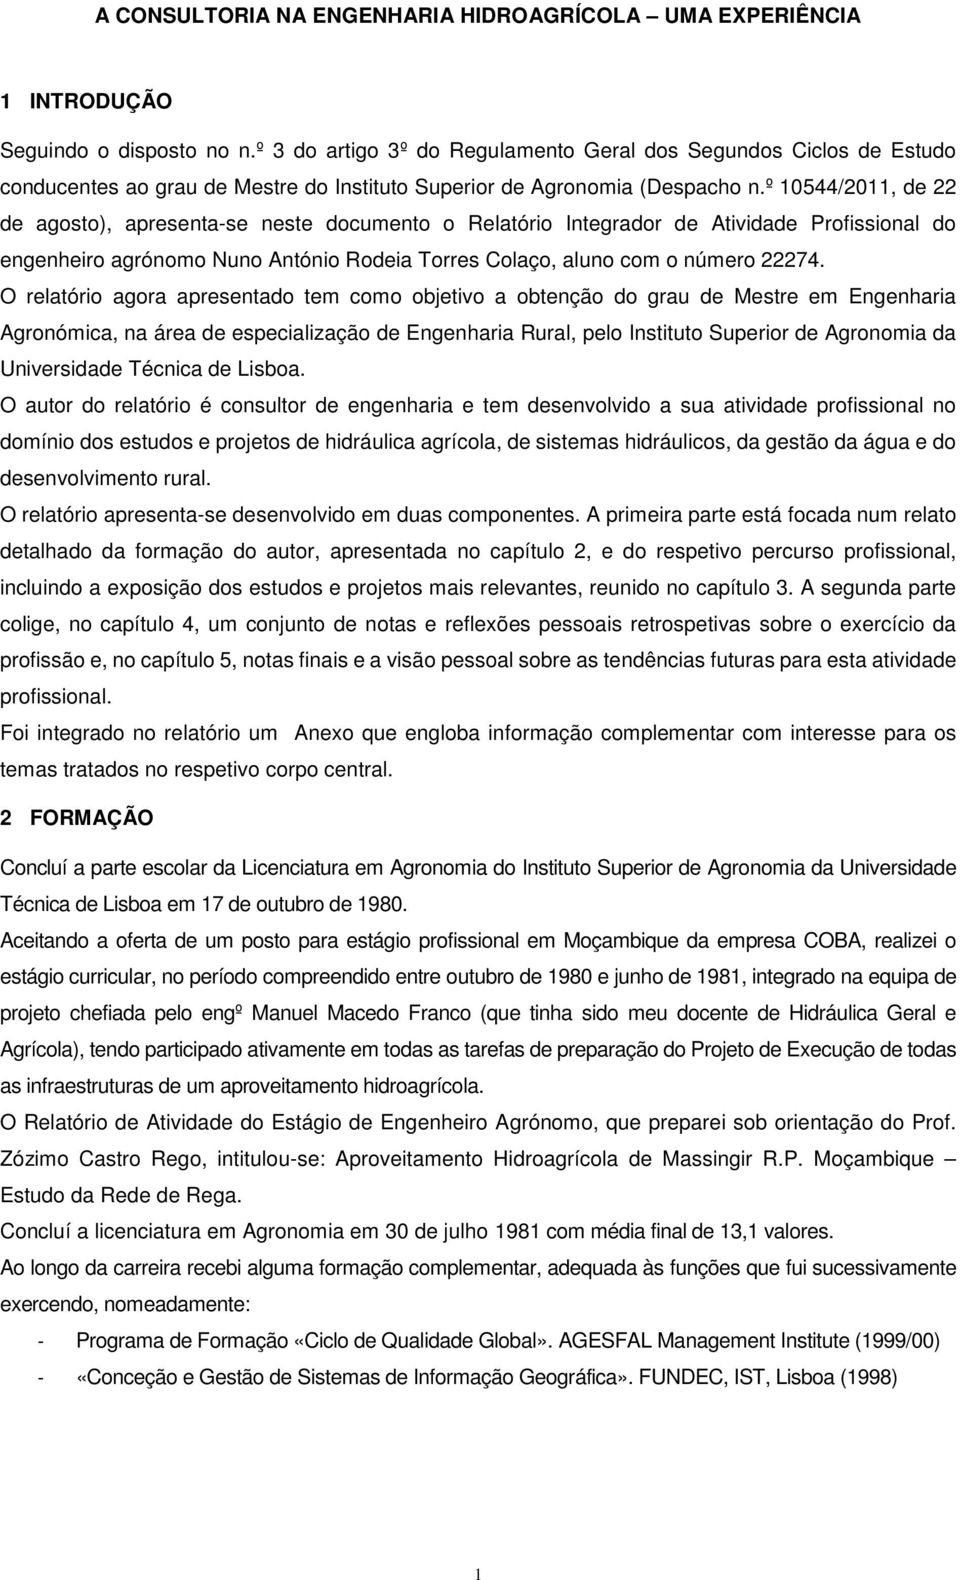 º 10544/2011, de 22 de agosto), apresenta-se neste documento o Relatório Integrador de Atividade Profissional do engenheiro agrónomo Nuno António Rodeia Torres Colaço, aluno com o número 22274.